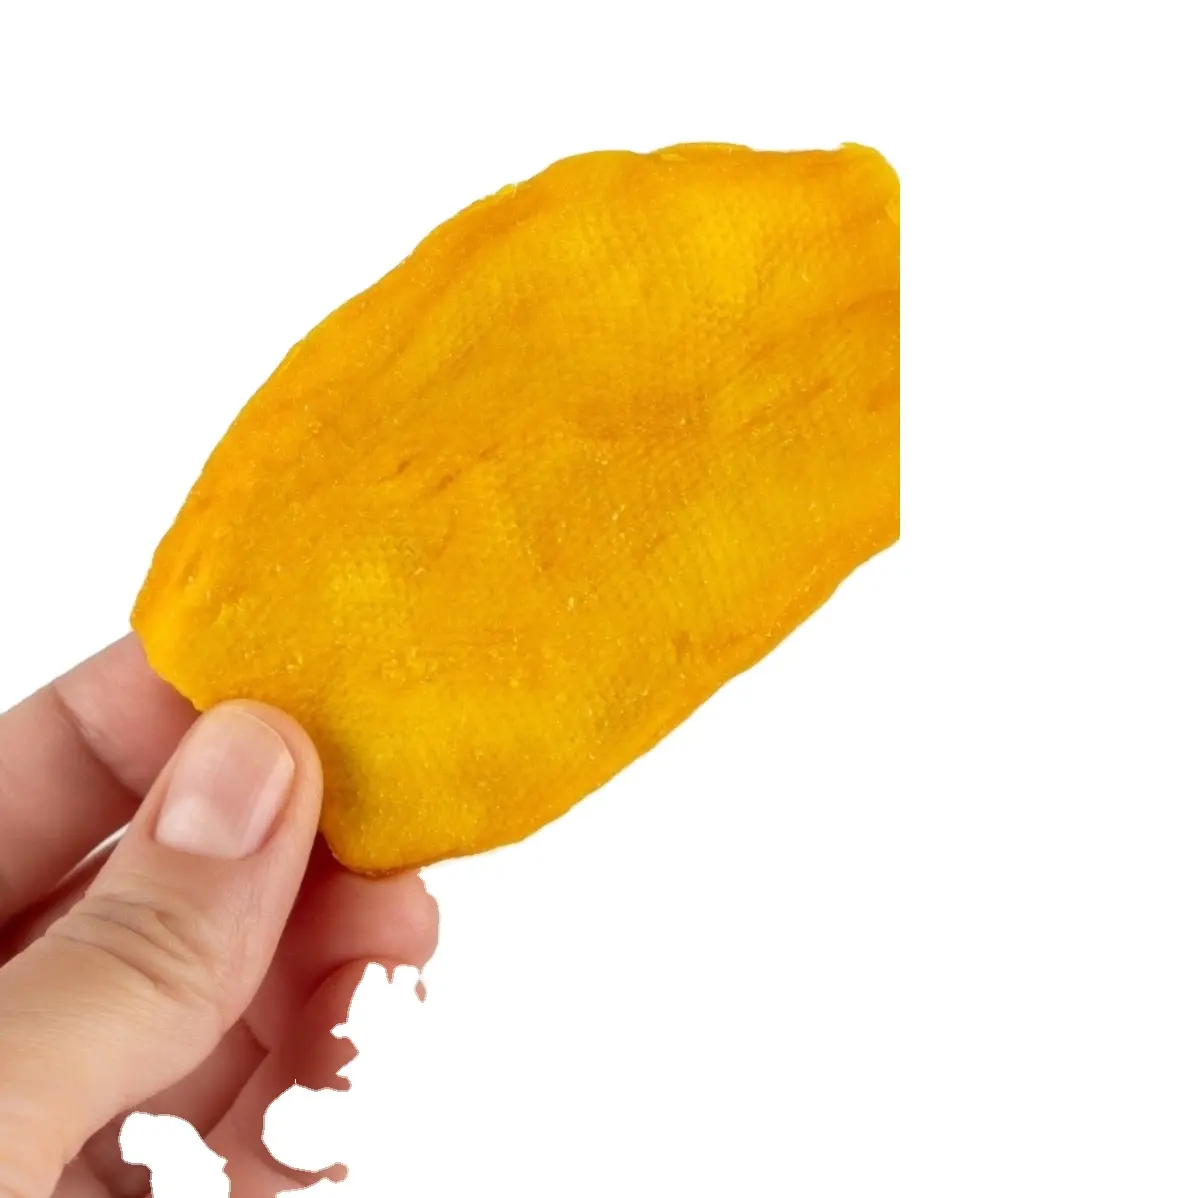 Mango essiccato senza additivi nessuna specifica di imballaggio conservante mezze fette 100% mango, agrodolce-Whatsapp 0084989322607